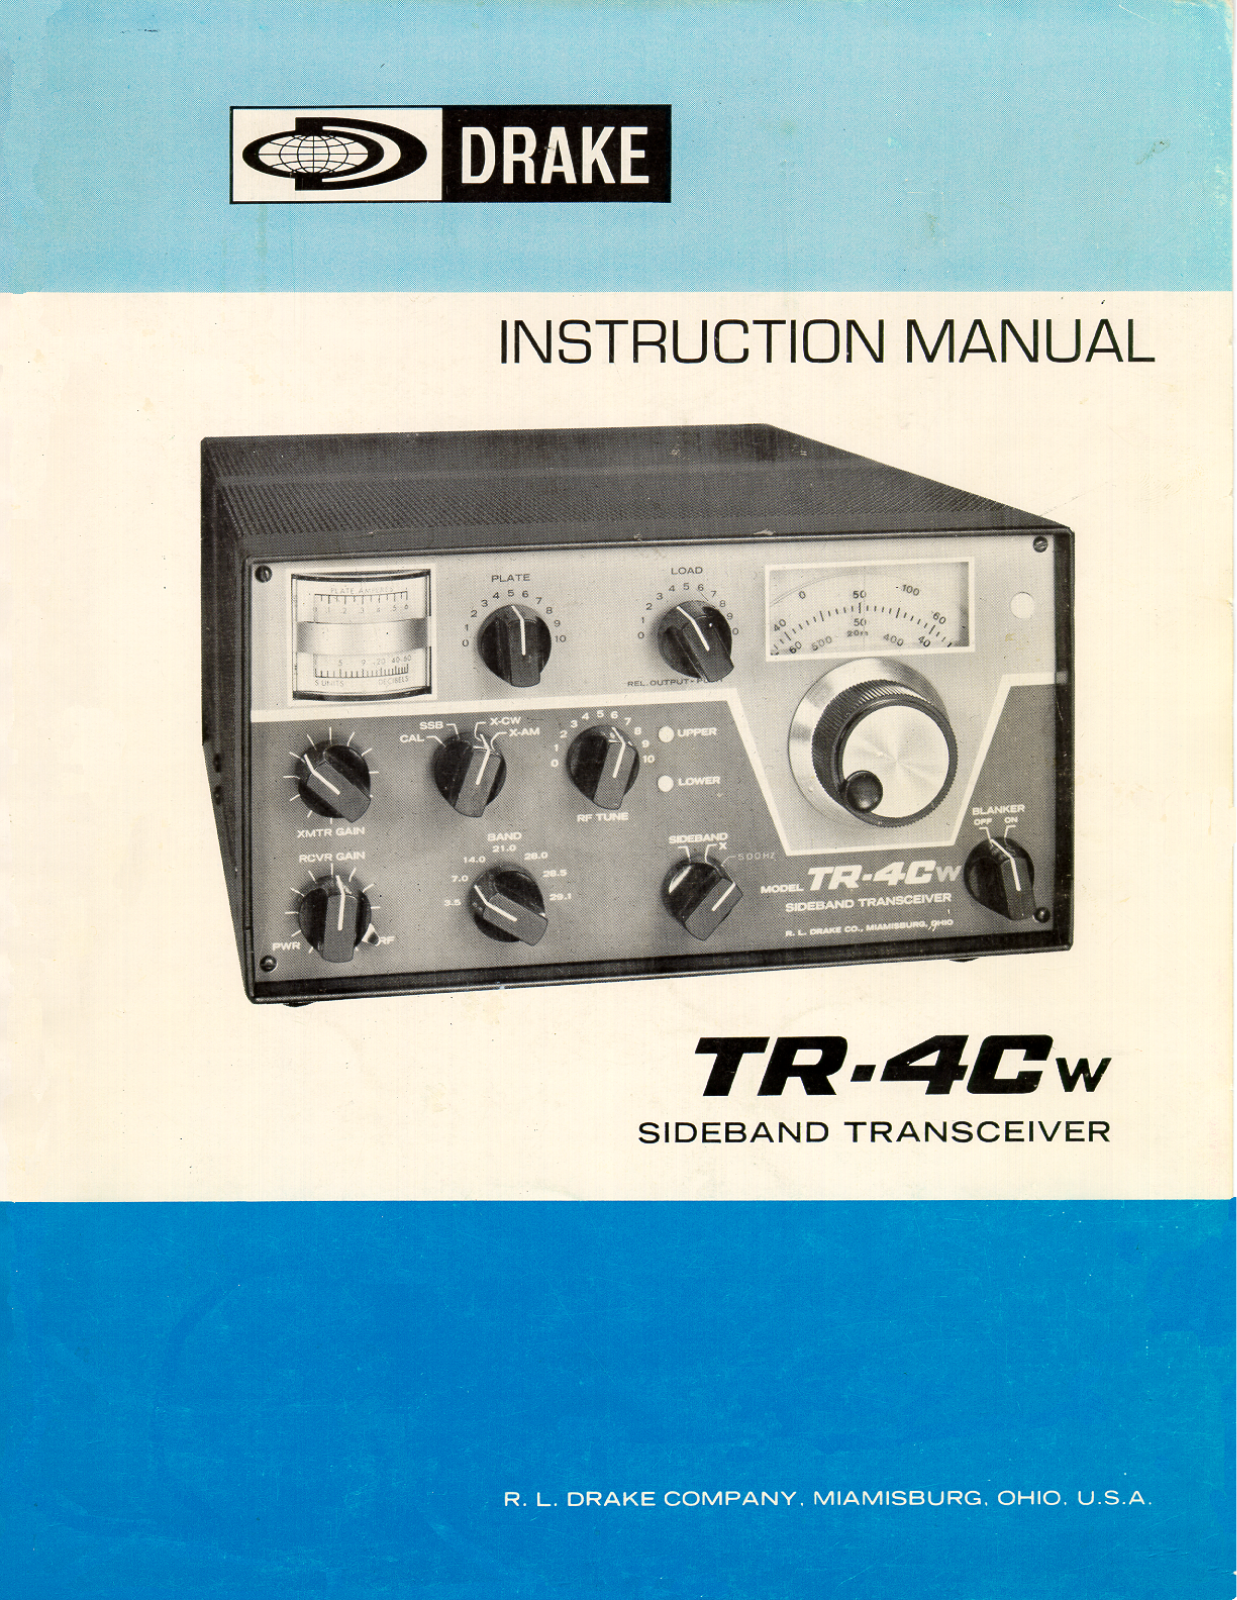 DRAKE TR-4CW User Manual